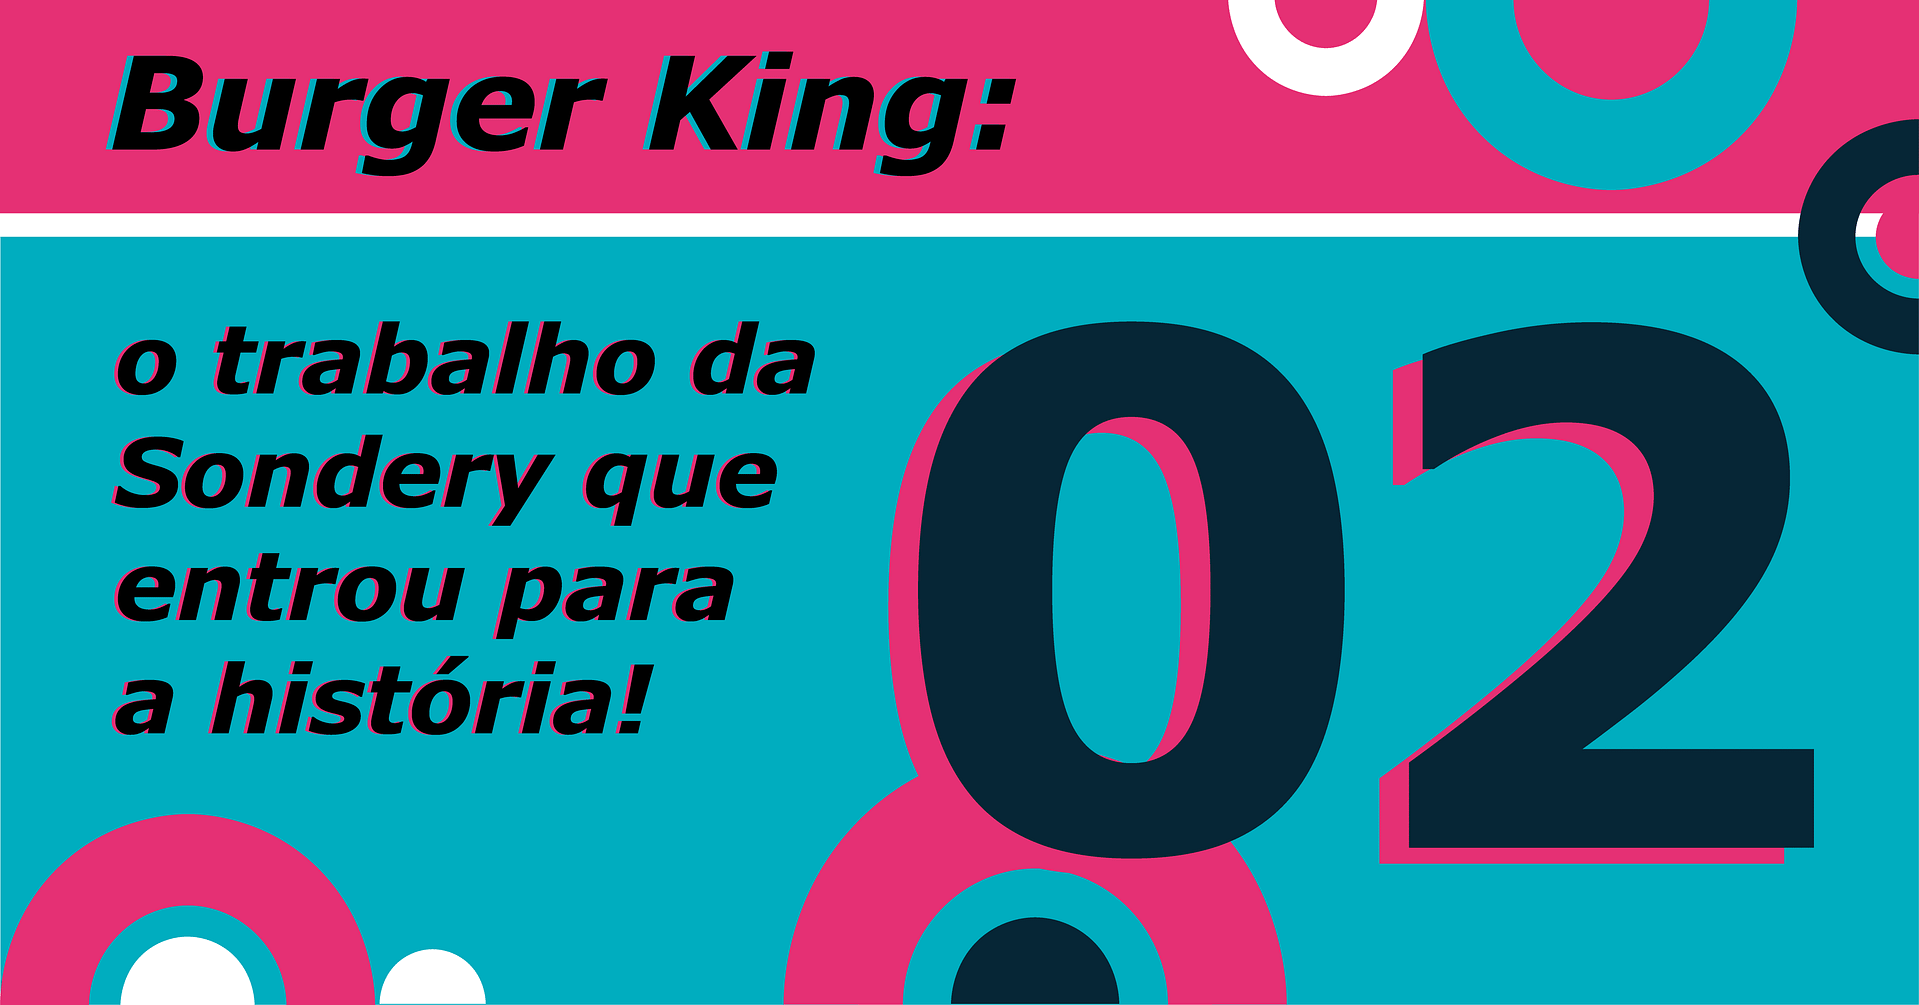 Sobre um fundo rosa e azul claro com semi-círculos brancos, azuis e rosas, há o texto "Burger King: o trabalho da Sondery que entrou para a história!" com um número "02" grande ao lado.